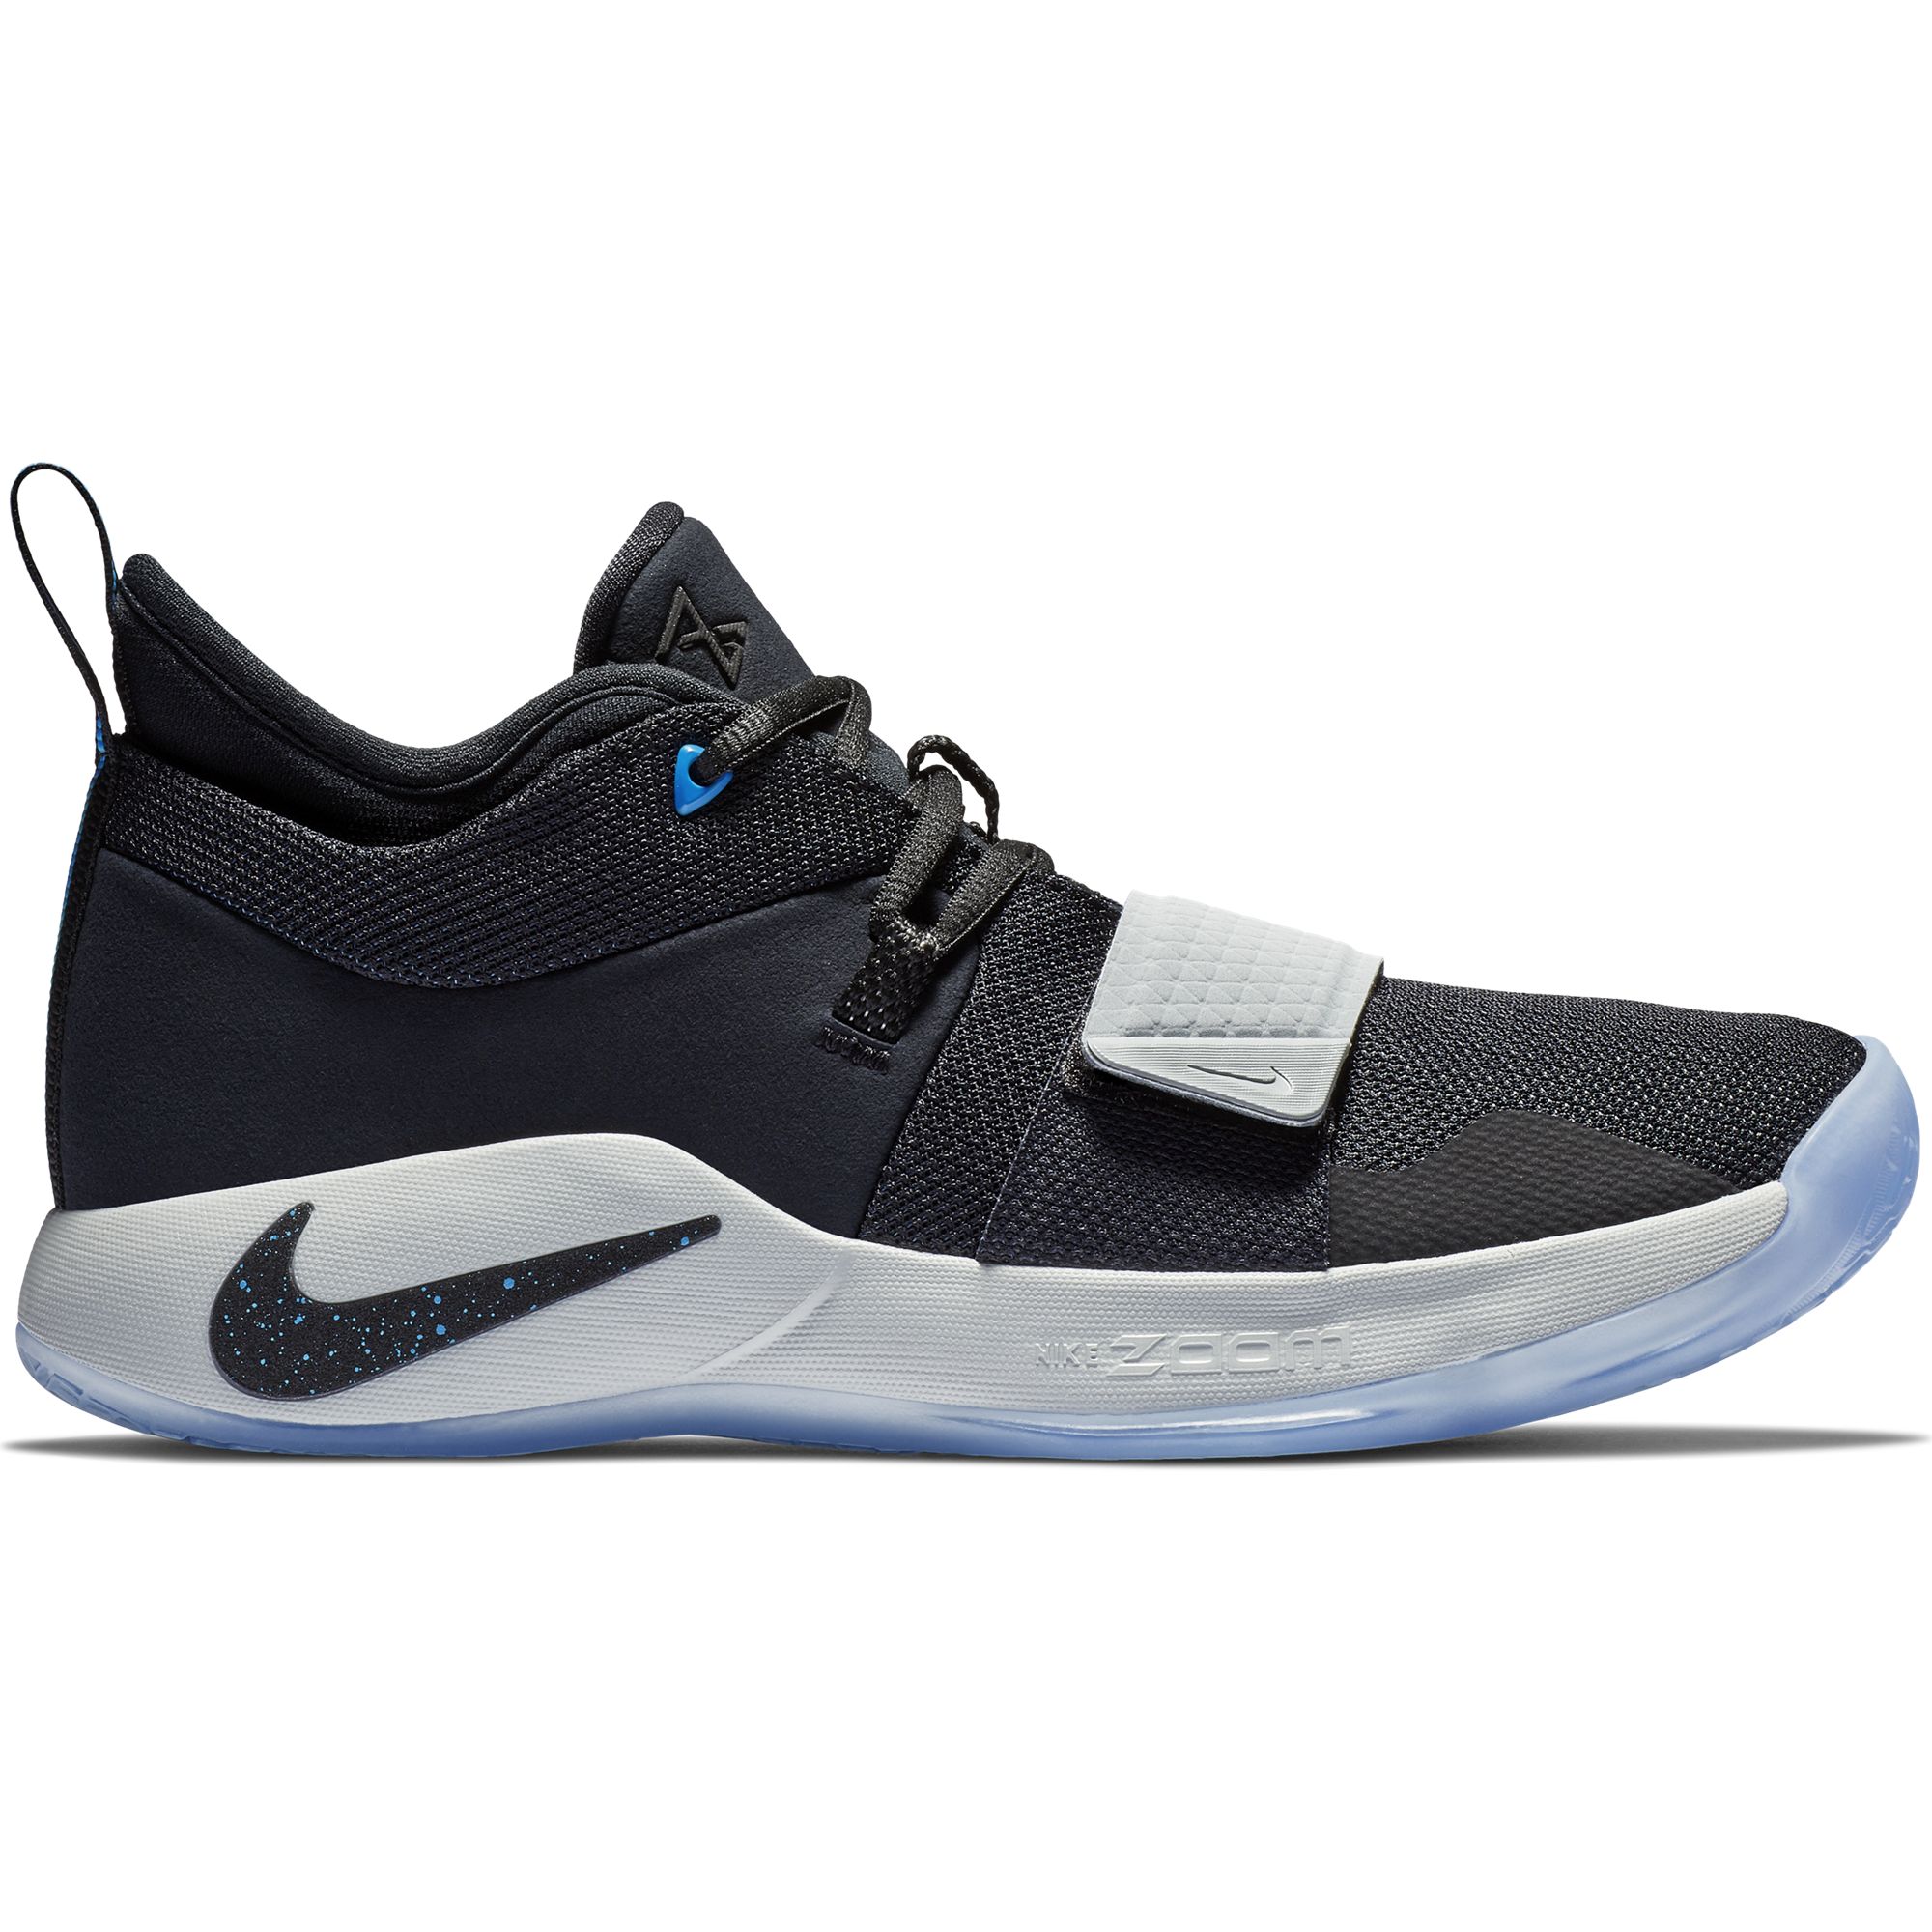 Баскетбольные кроссовки Nike PG 2.5 - картинка